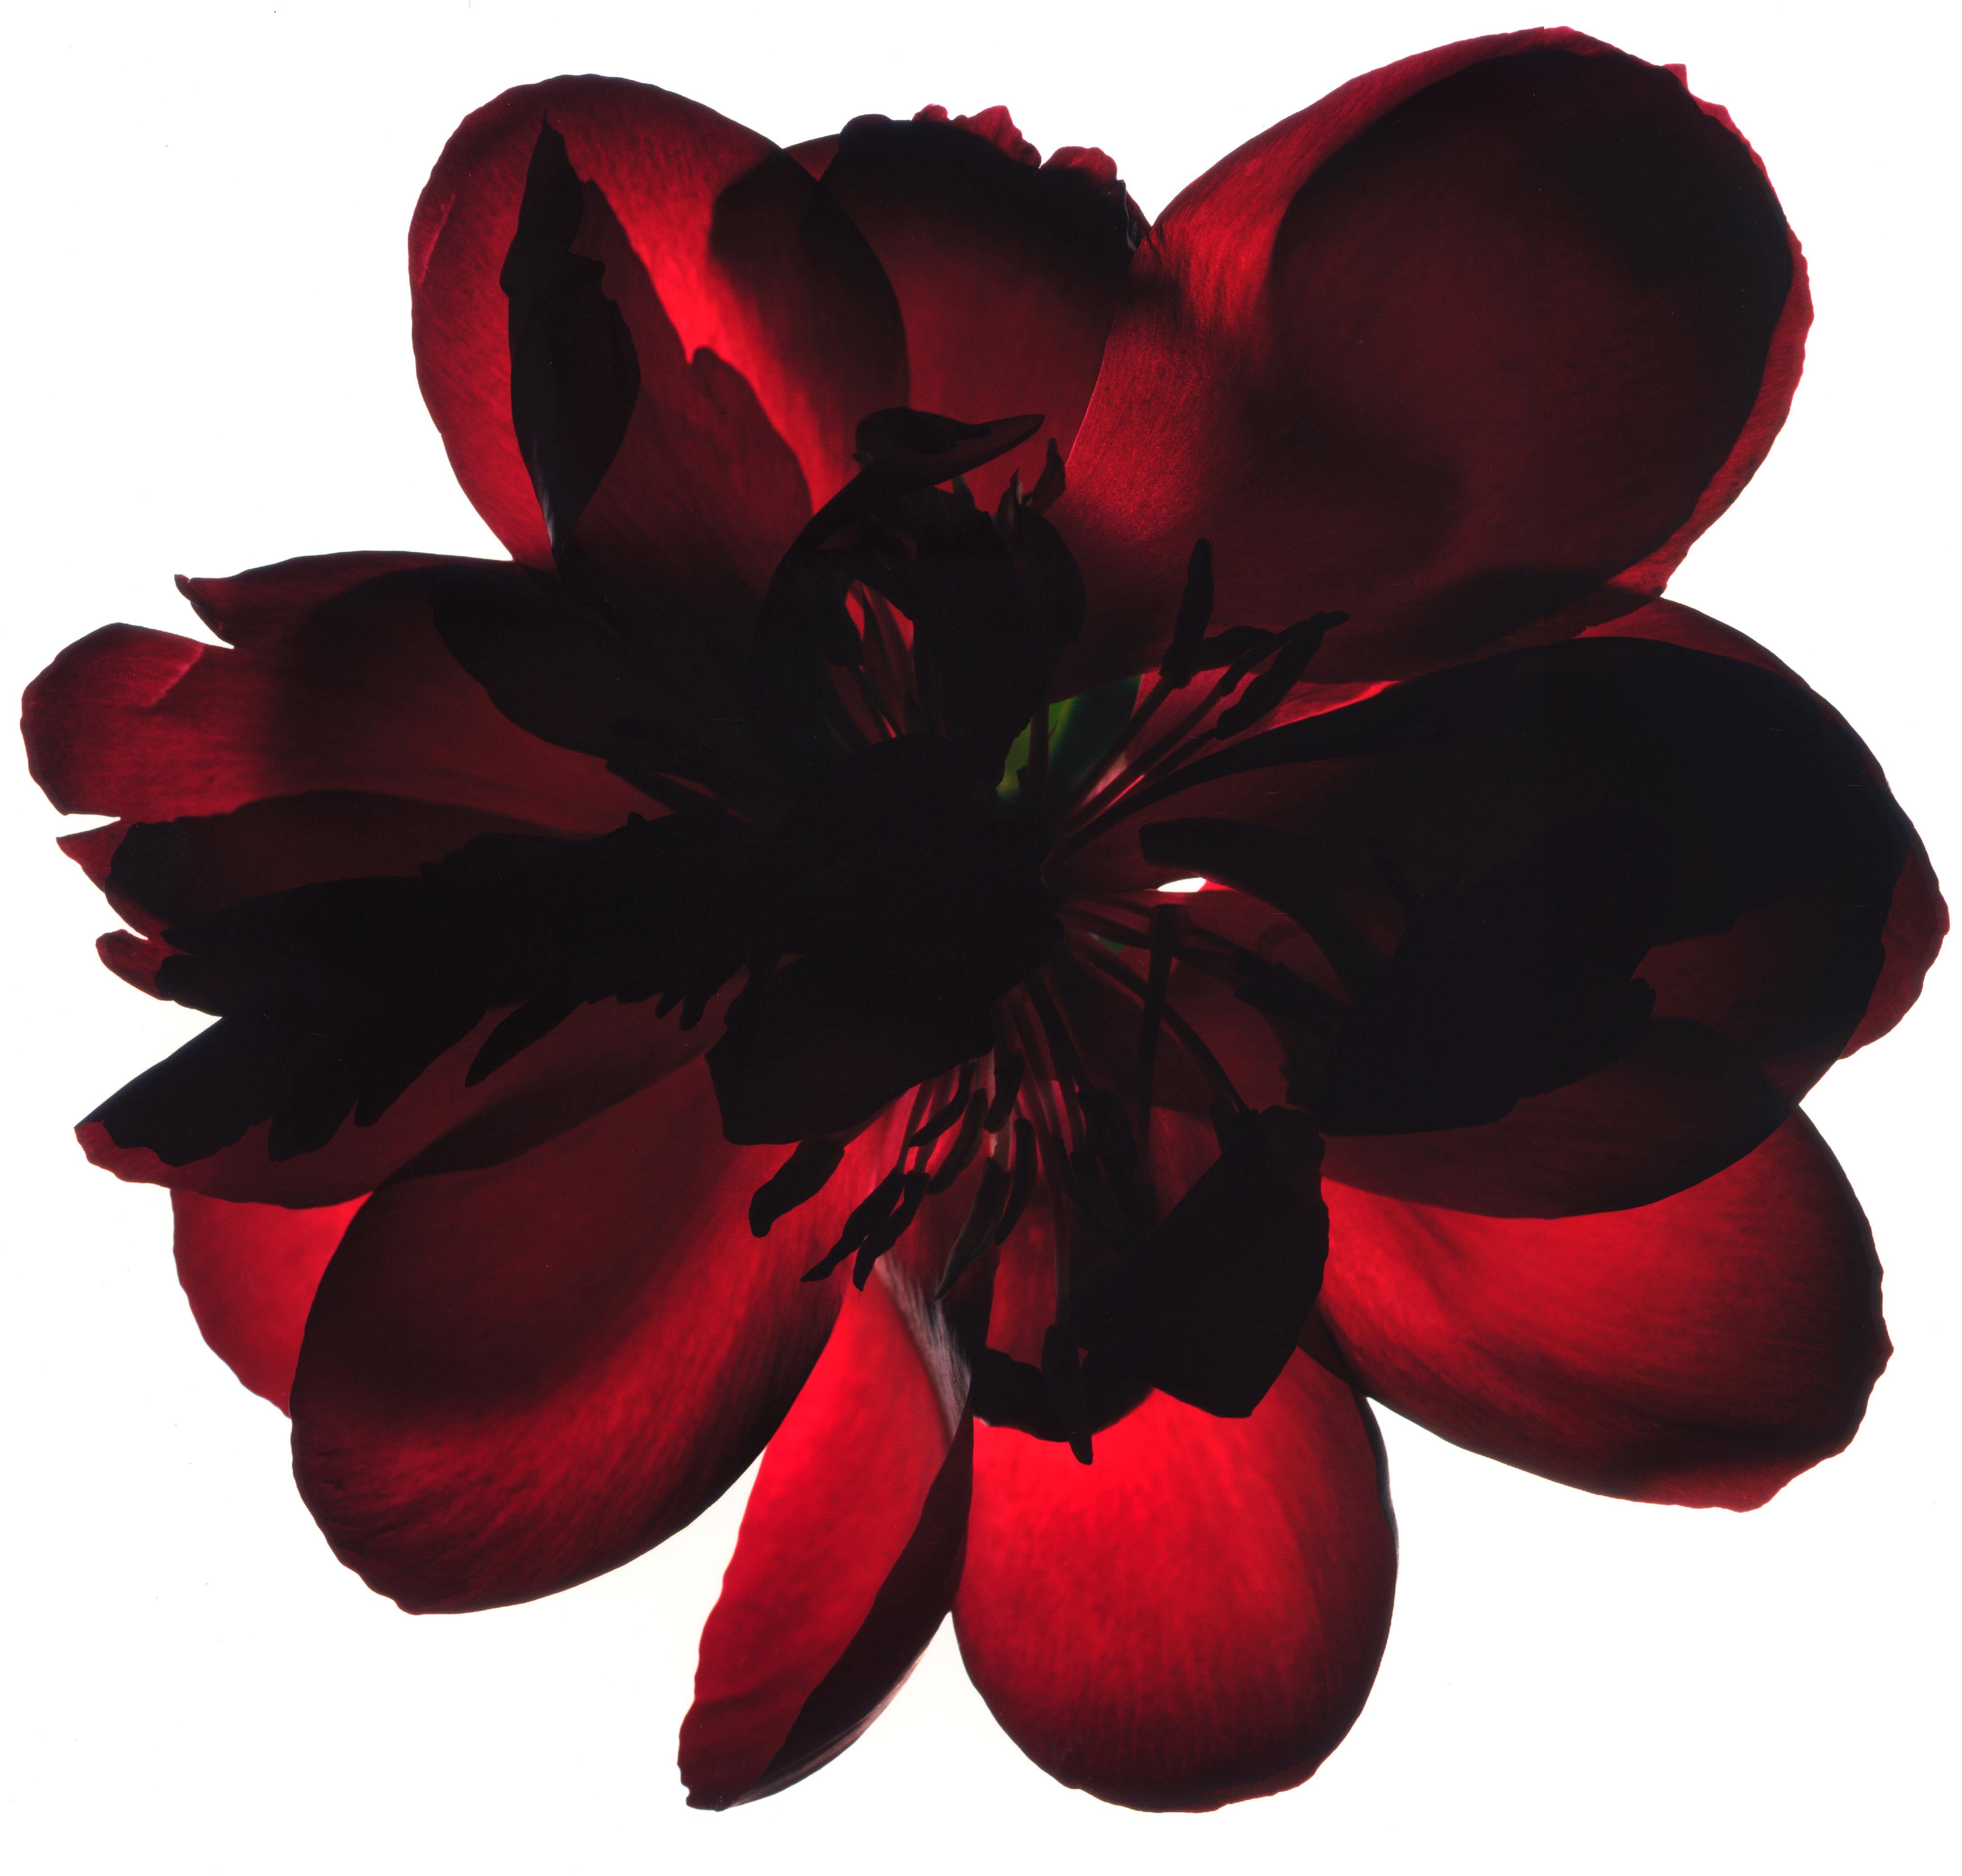 Unbenannte Blume # 59
Hahnemuhle Photo Rag Matte Papier mit Epson Tinte in Archivierungsqualität
Auflage von 25 Stück
Verfügbare Größen:
11" x 14"
20" x 24"
30" x 30"
30" x 40"
40" x 40"
48" x 48"
48" x 60"
60" x 60"

Seit 1997 benutze ich einen